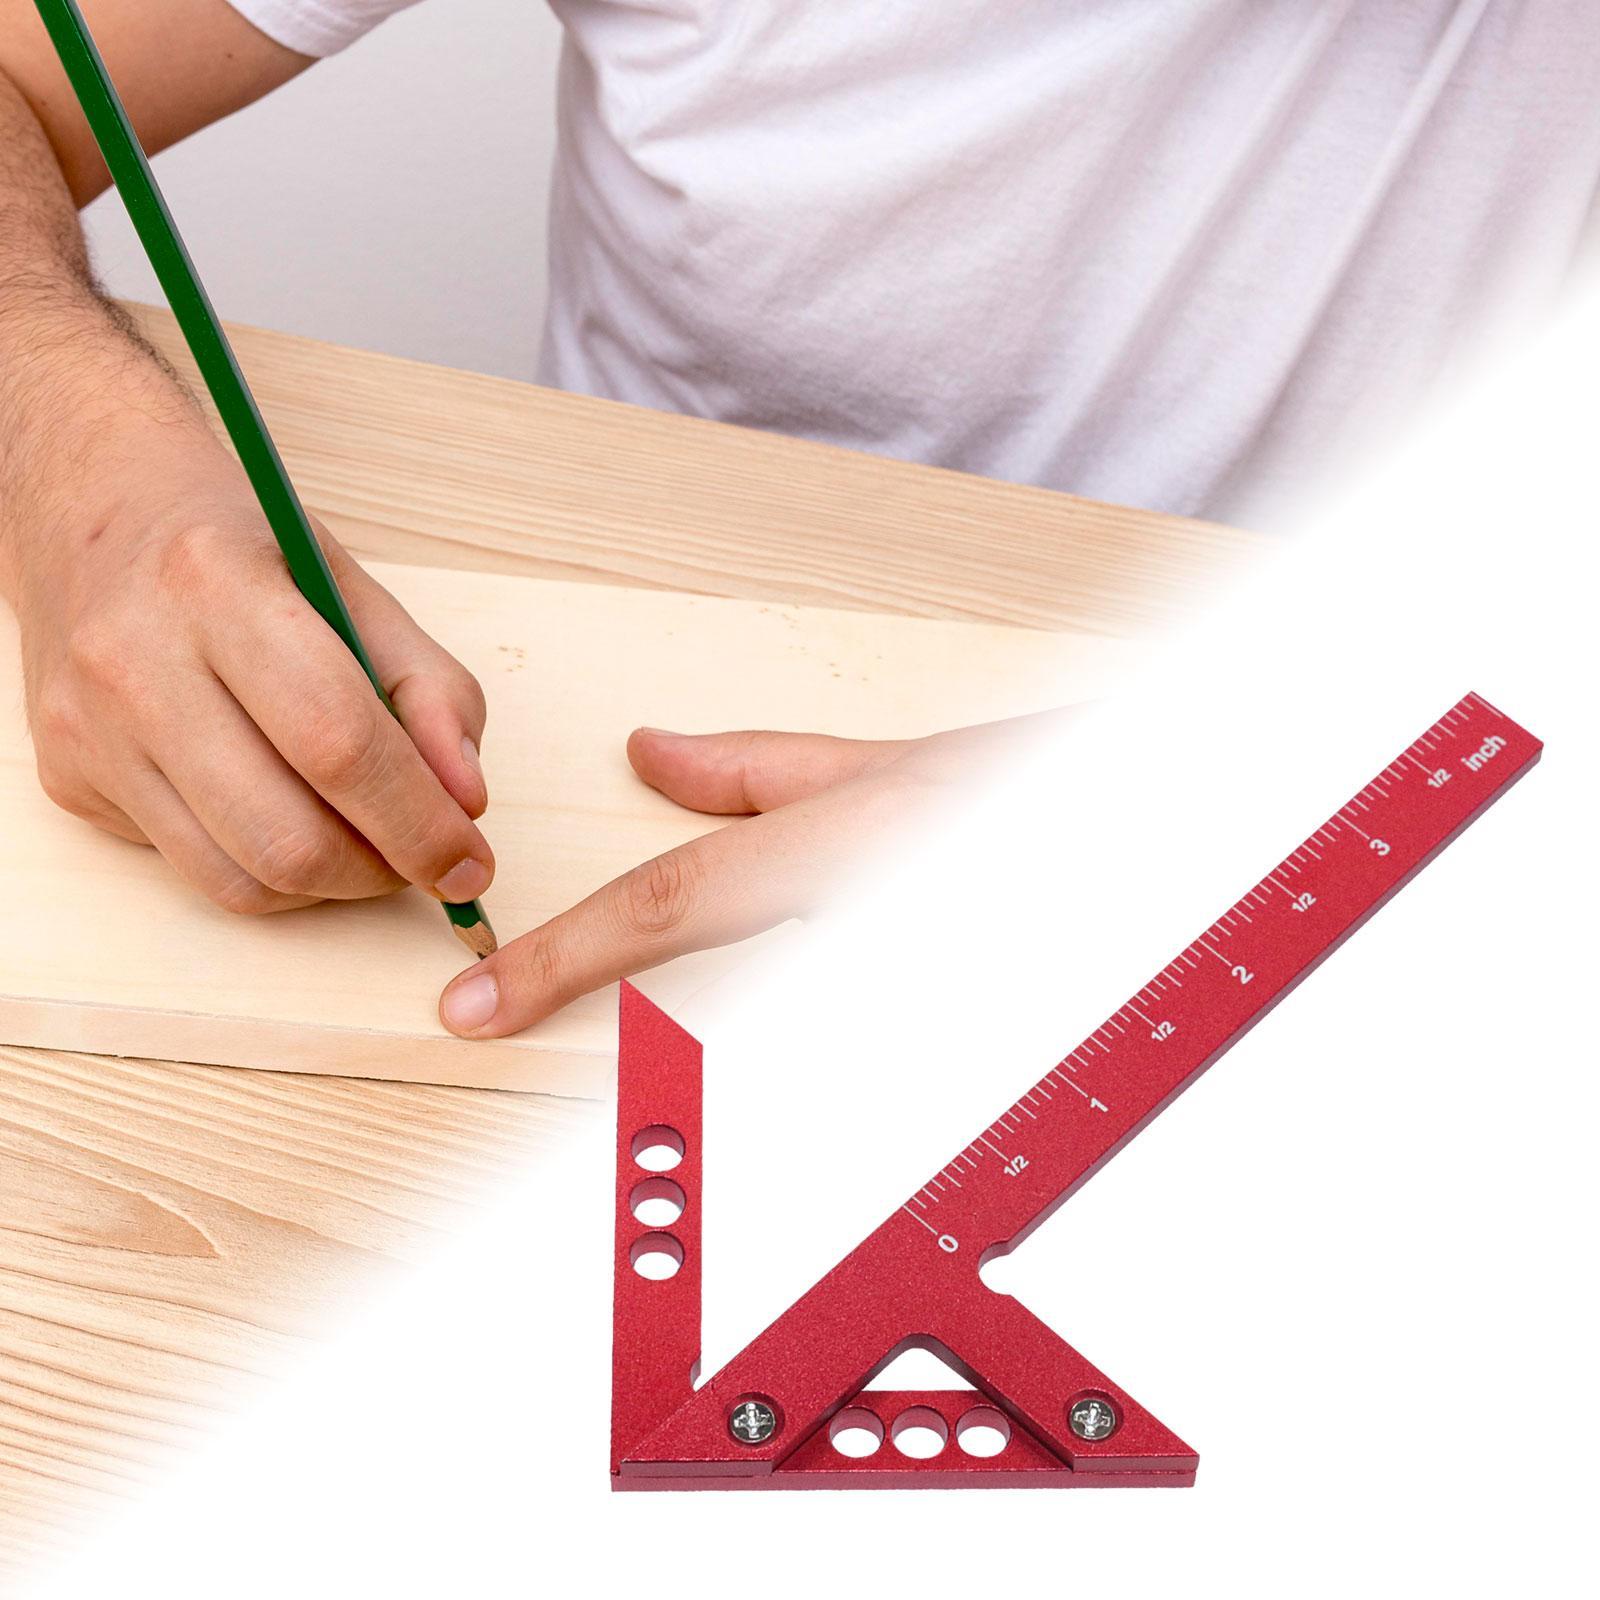 Woodworking Center Find Measuring Ruler Scriber for Marking